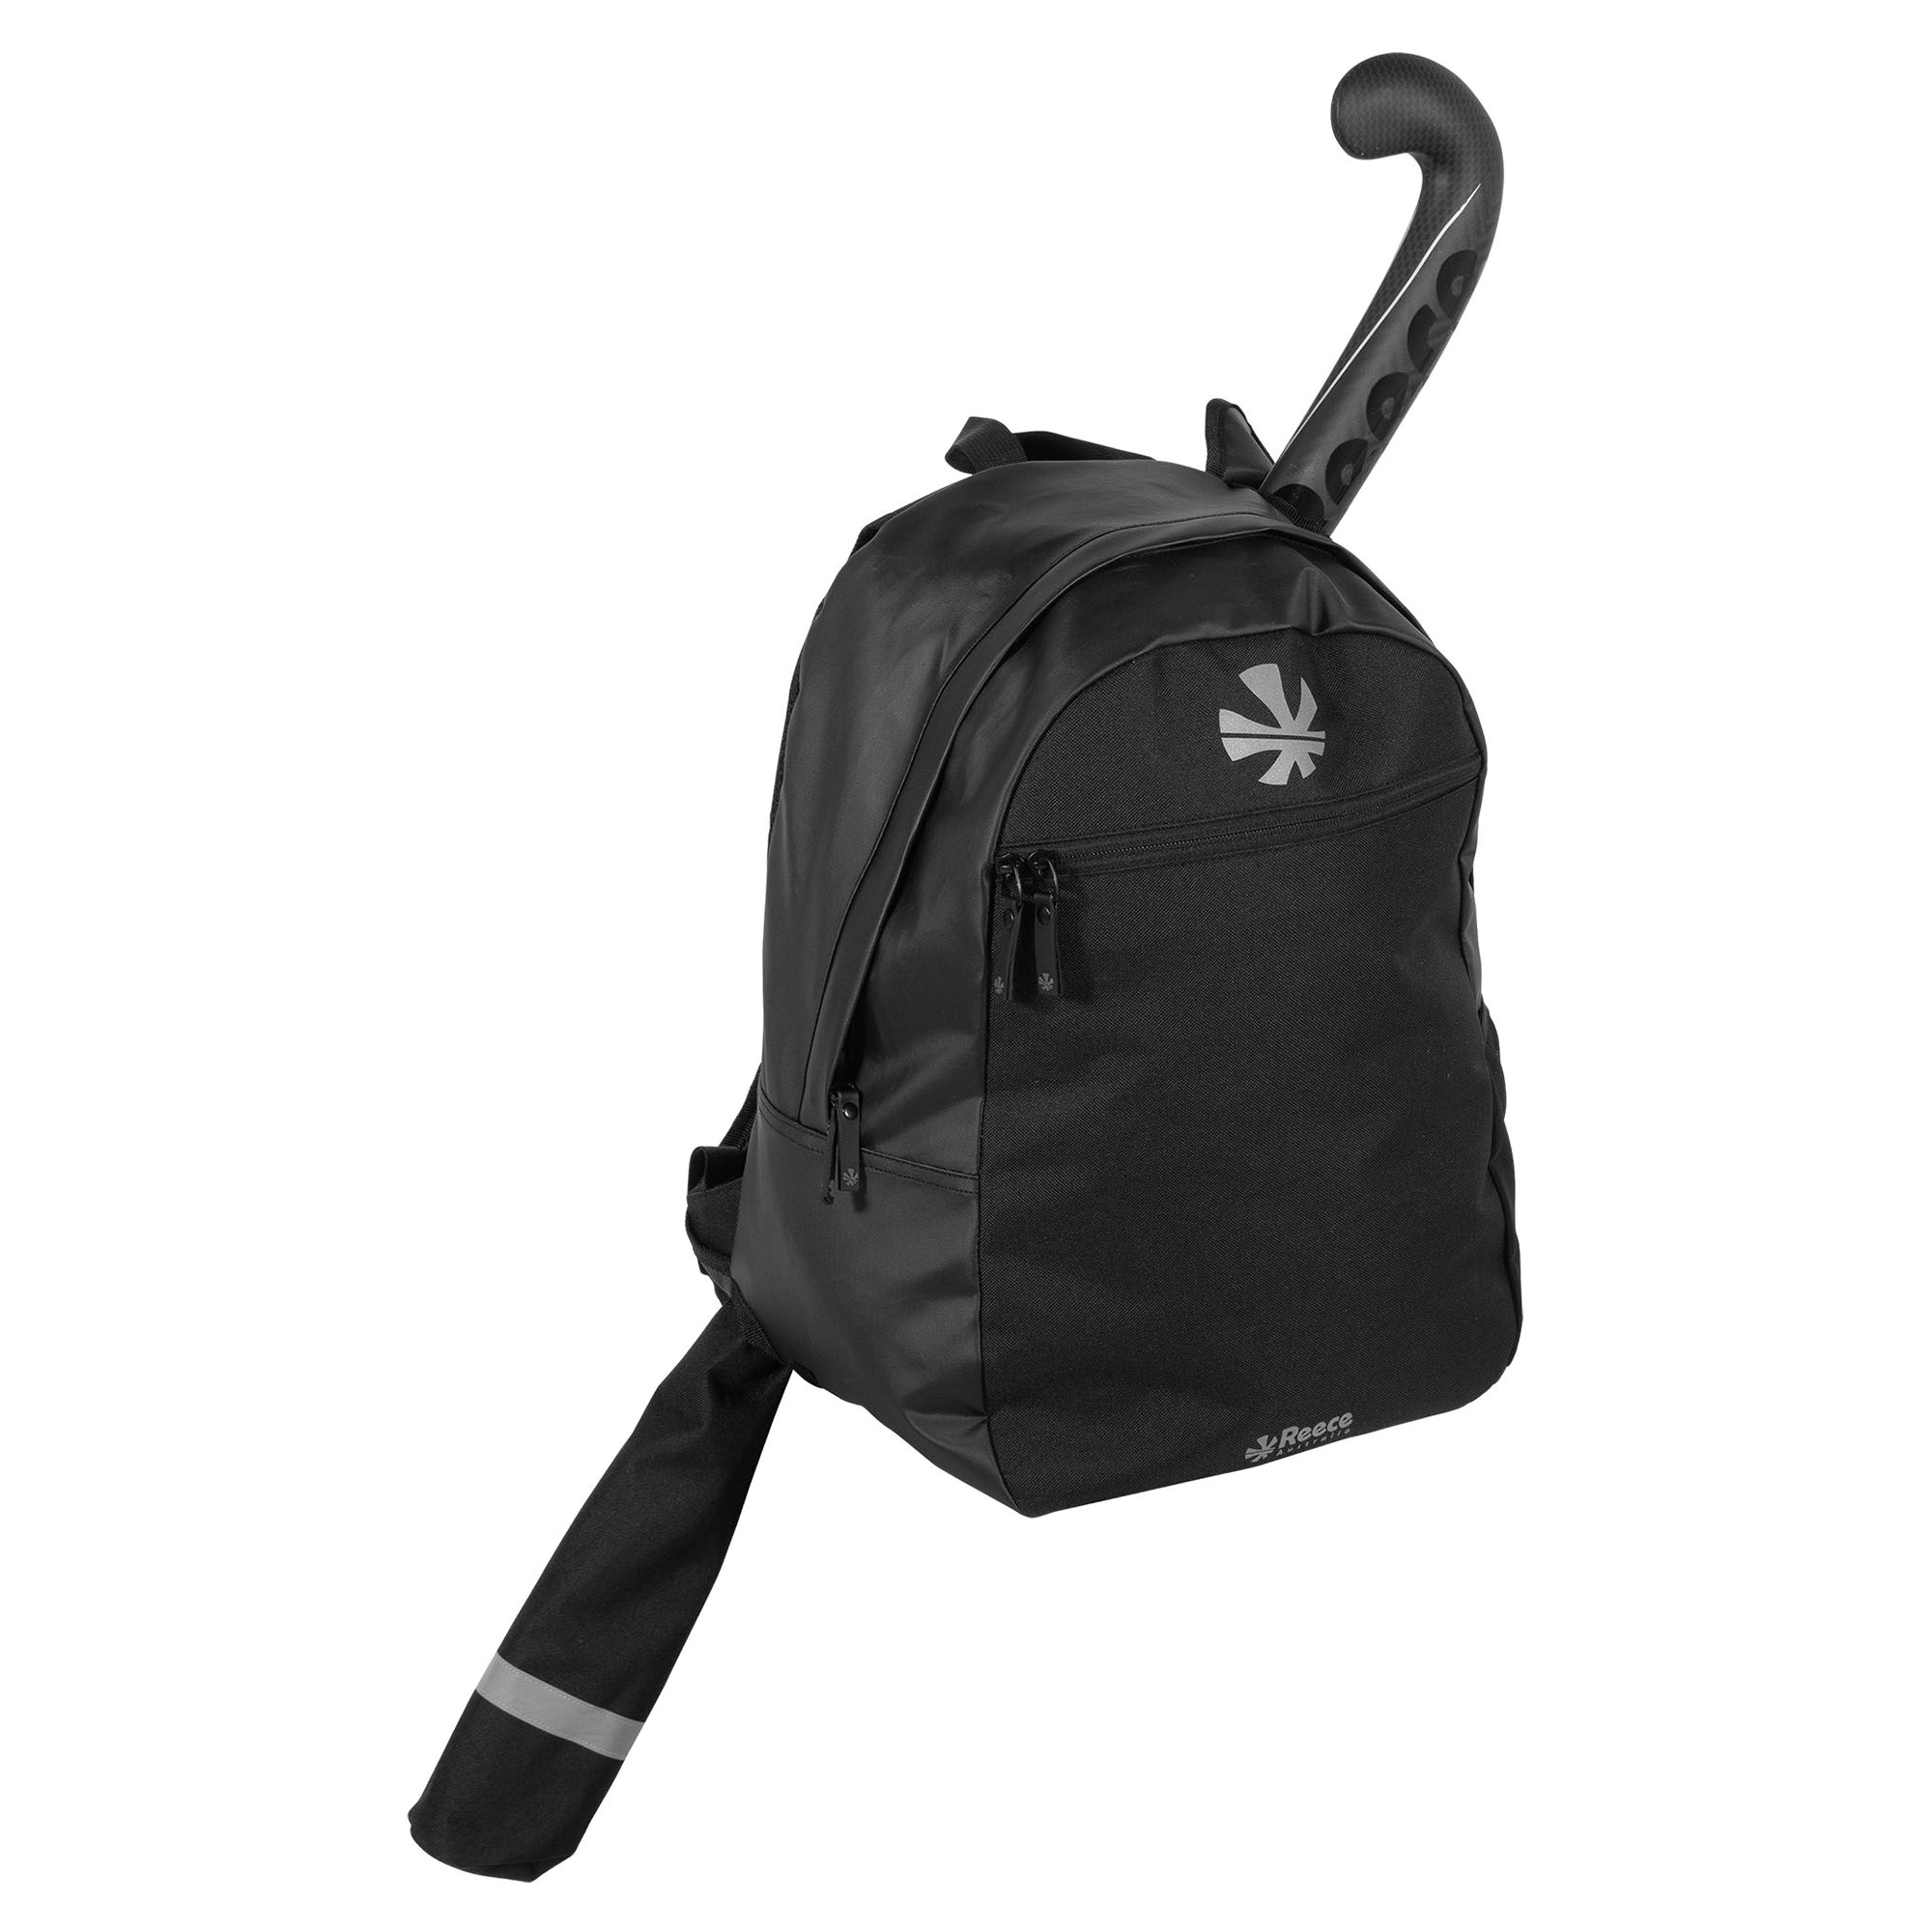 Reece Australia Derby II Backpack